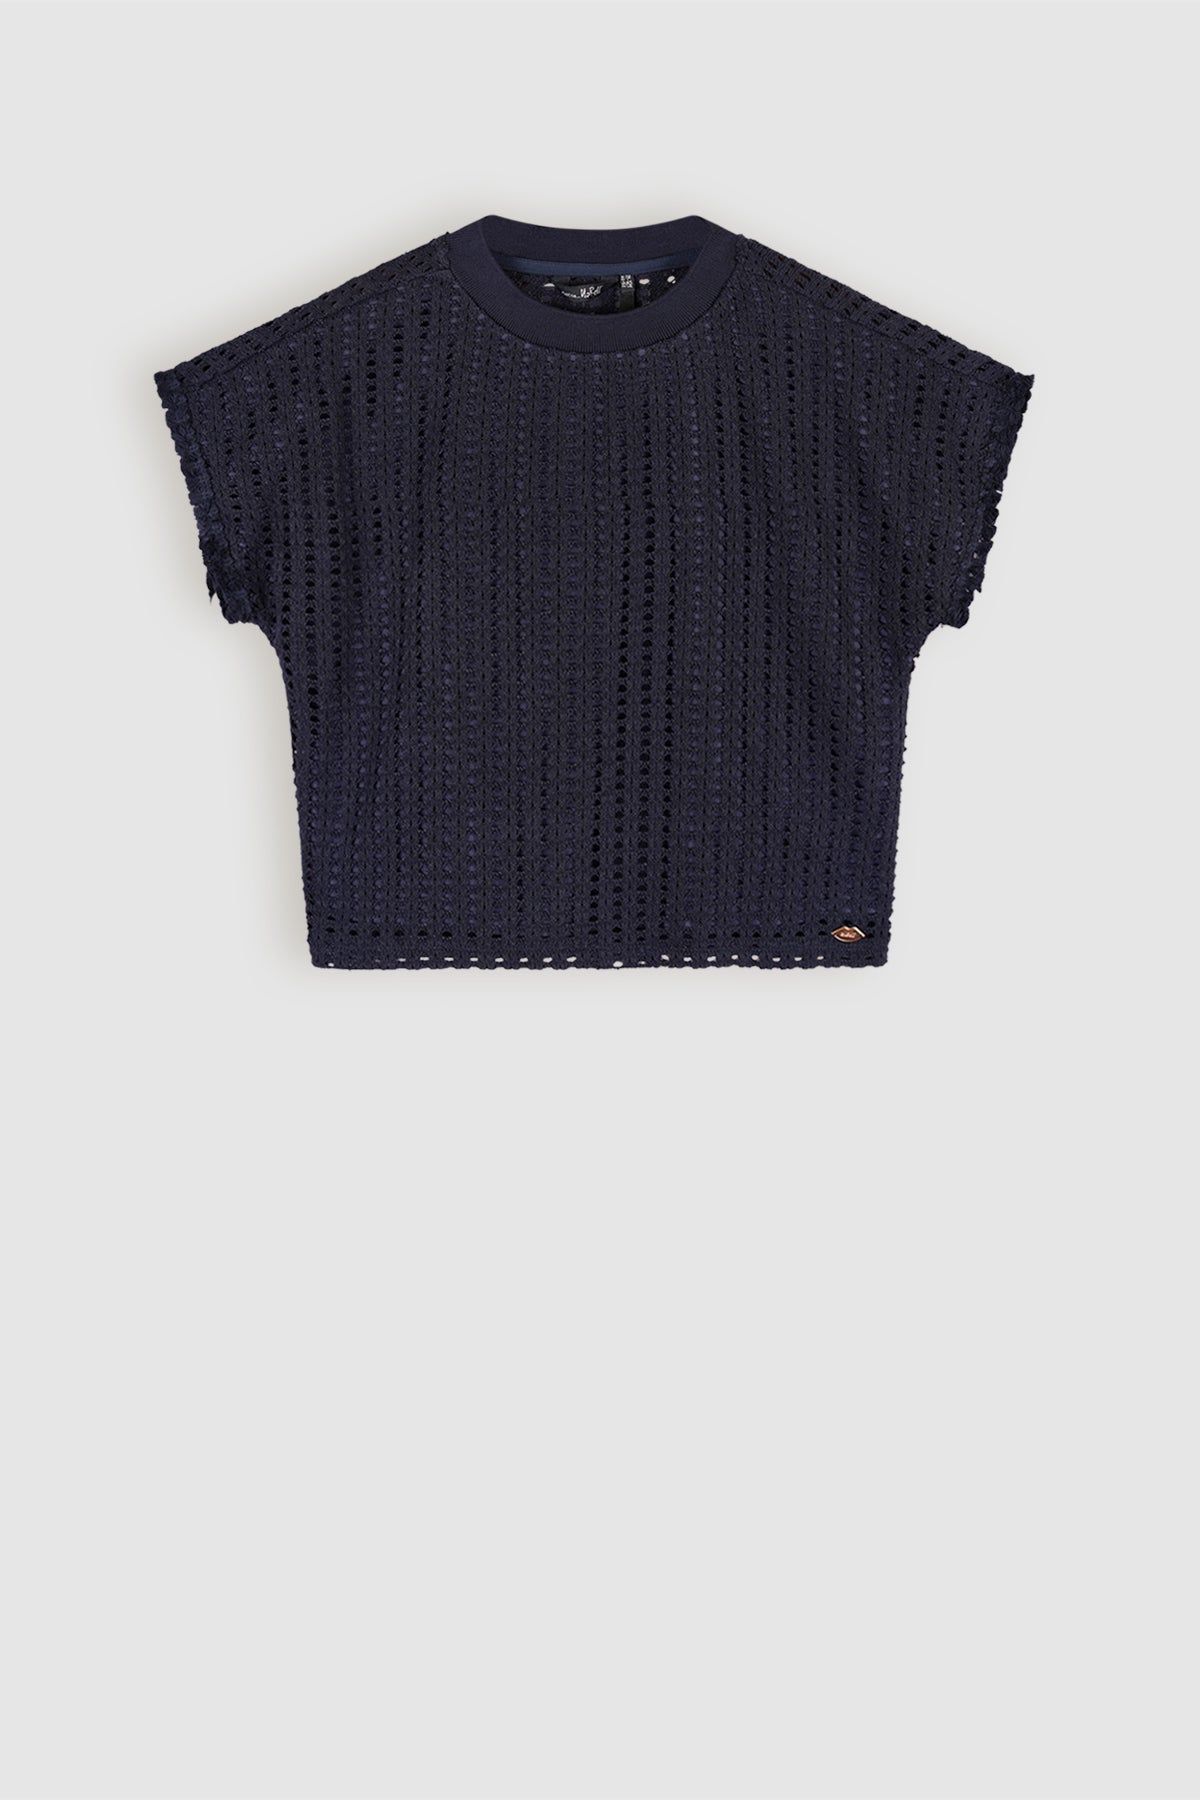 T-Shirt Kawai Crochet Crop Top Navy